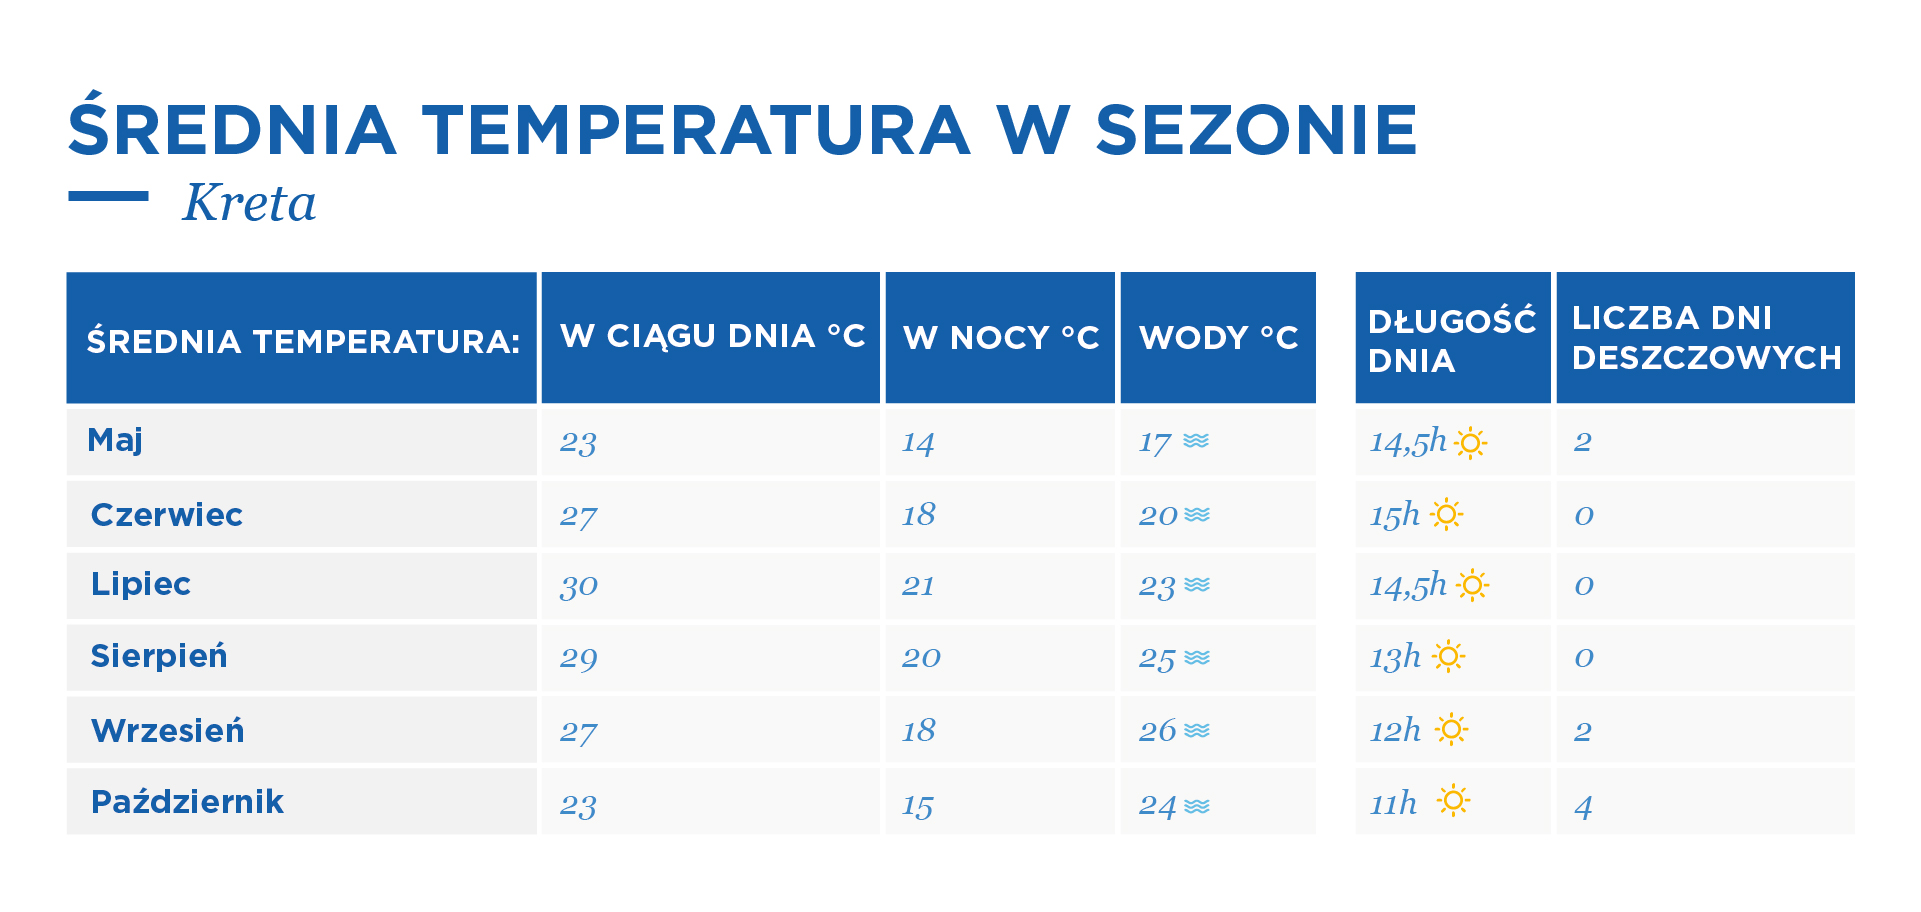 Średnie temperatury na Krecie w sezonie w układzie miesięcznym